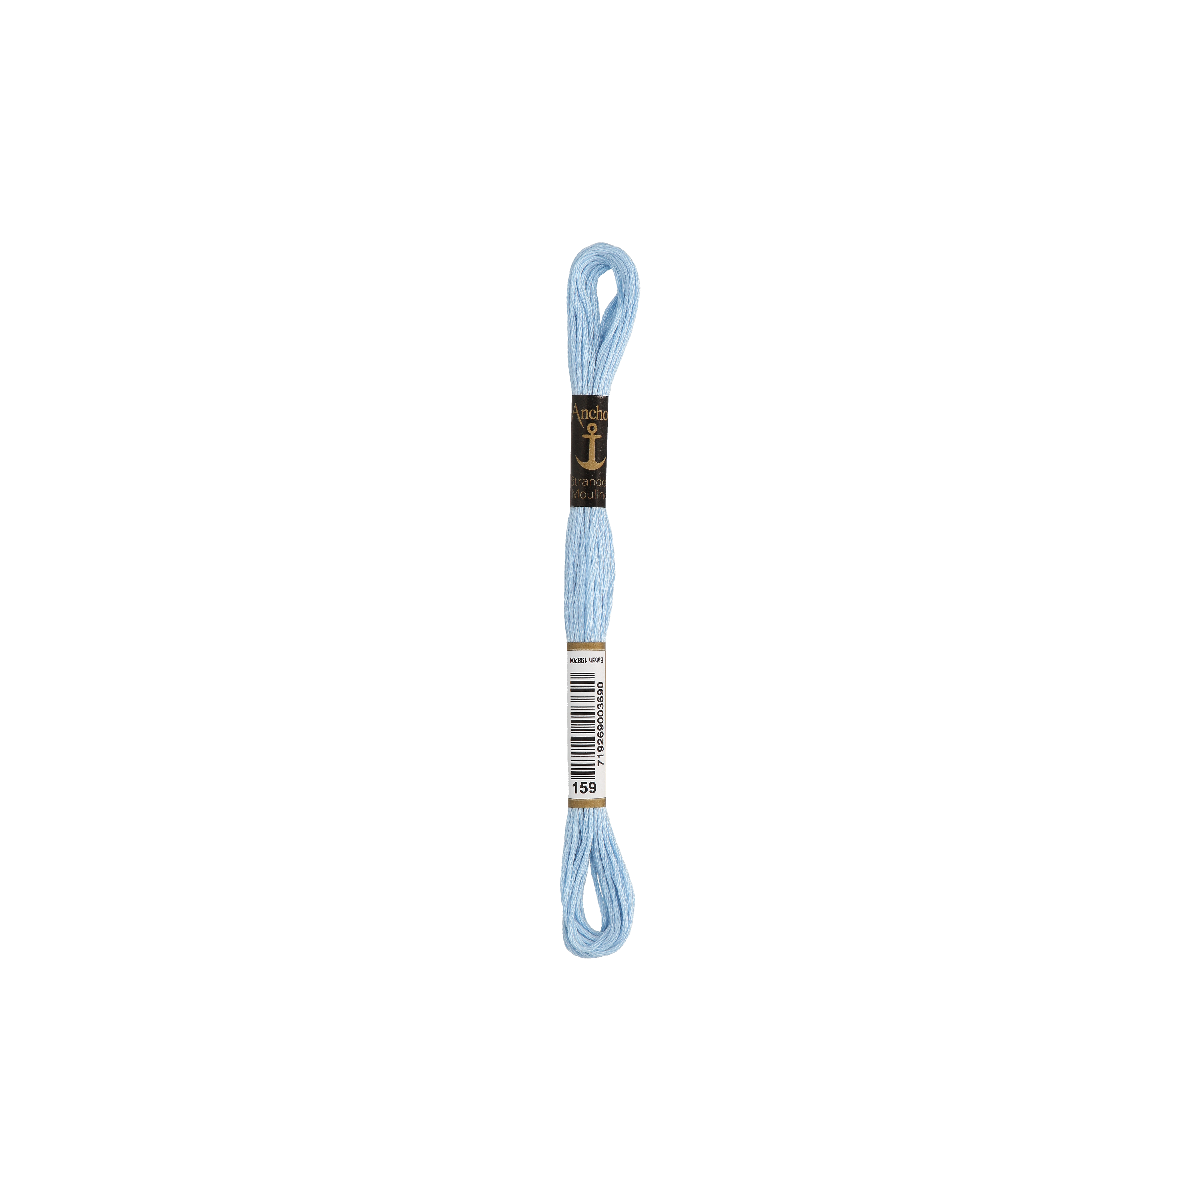 Anchor Sticktwist 8m, lichtblauw, katoen, kleur 159,...